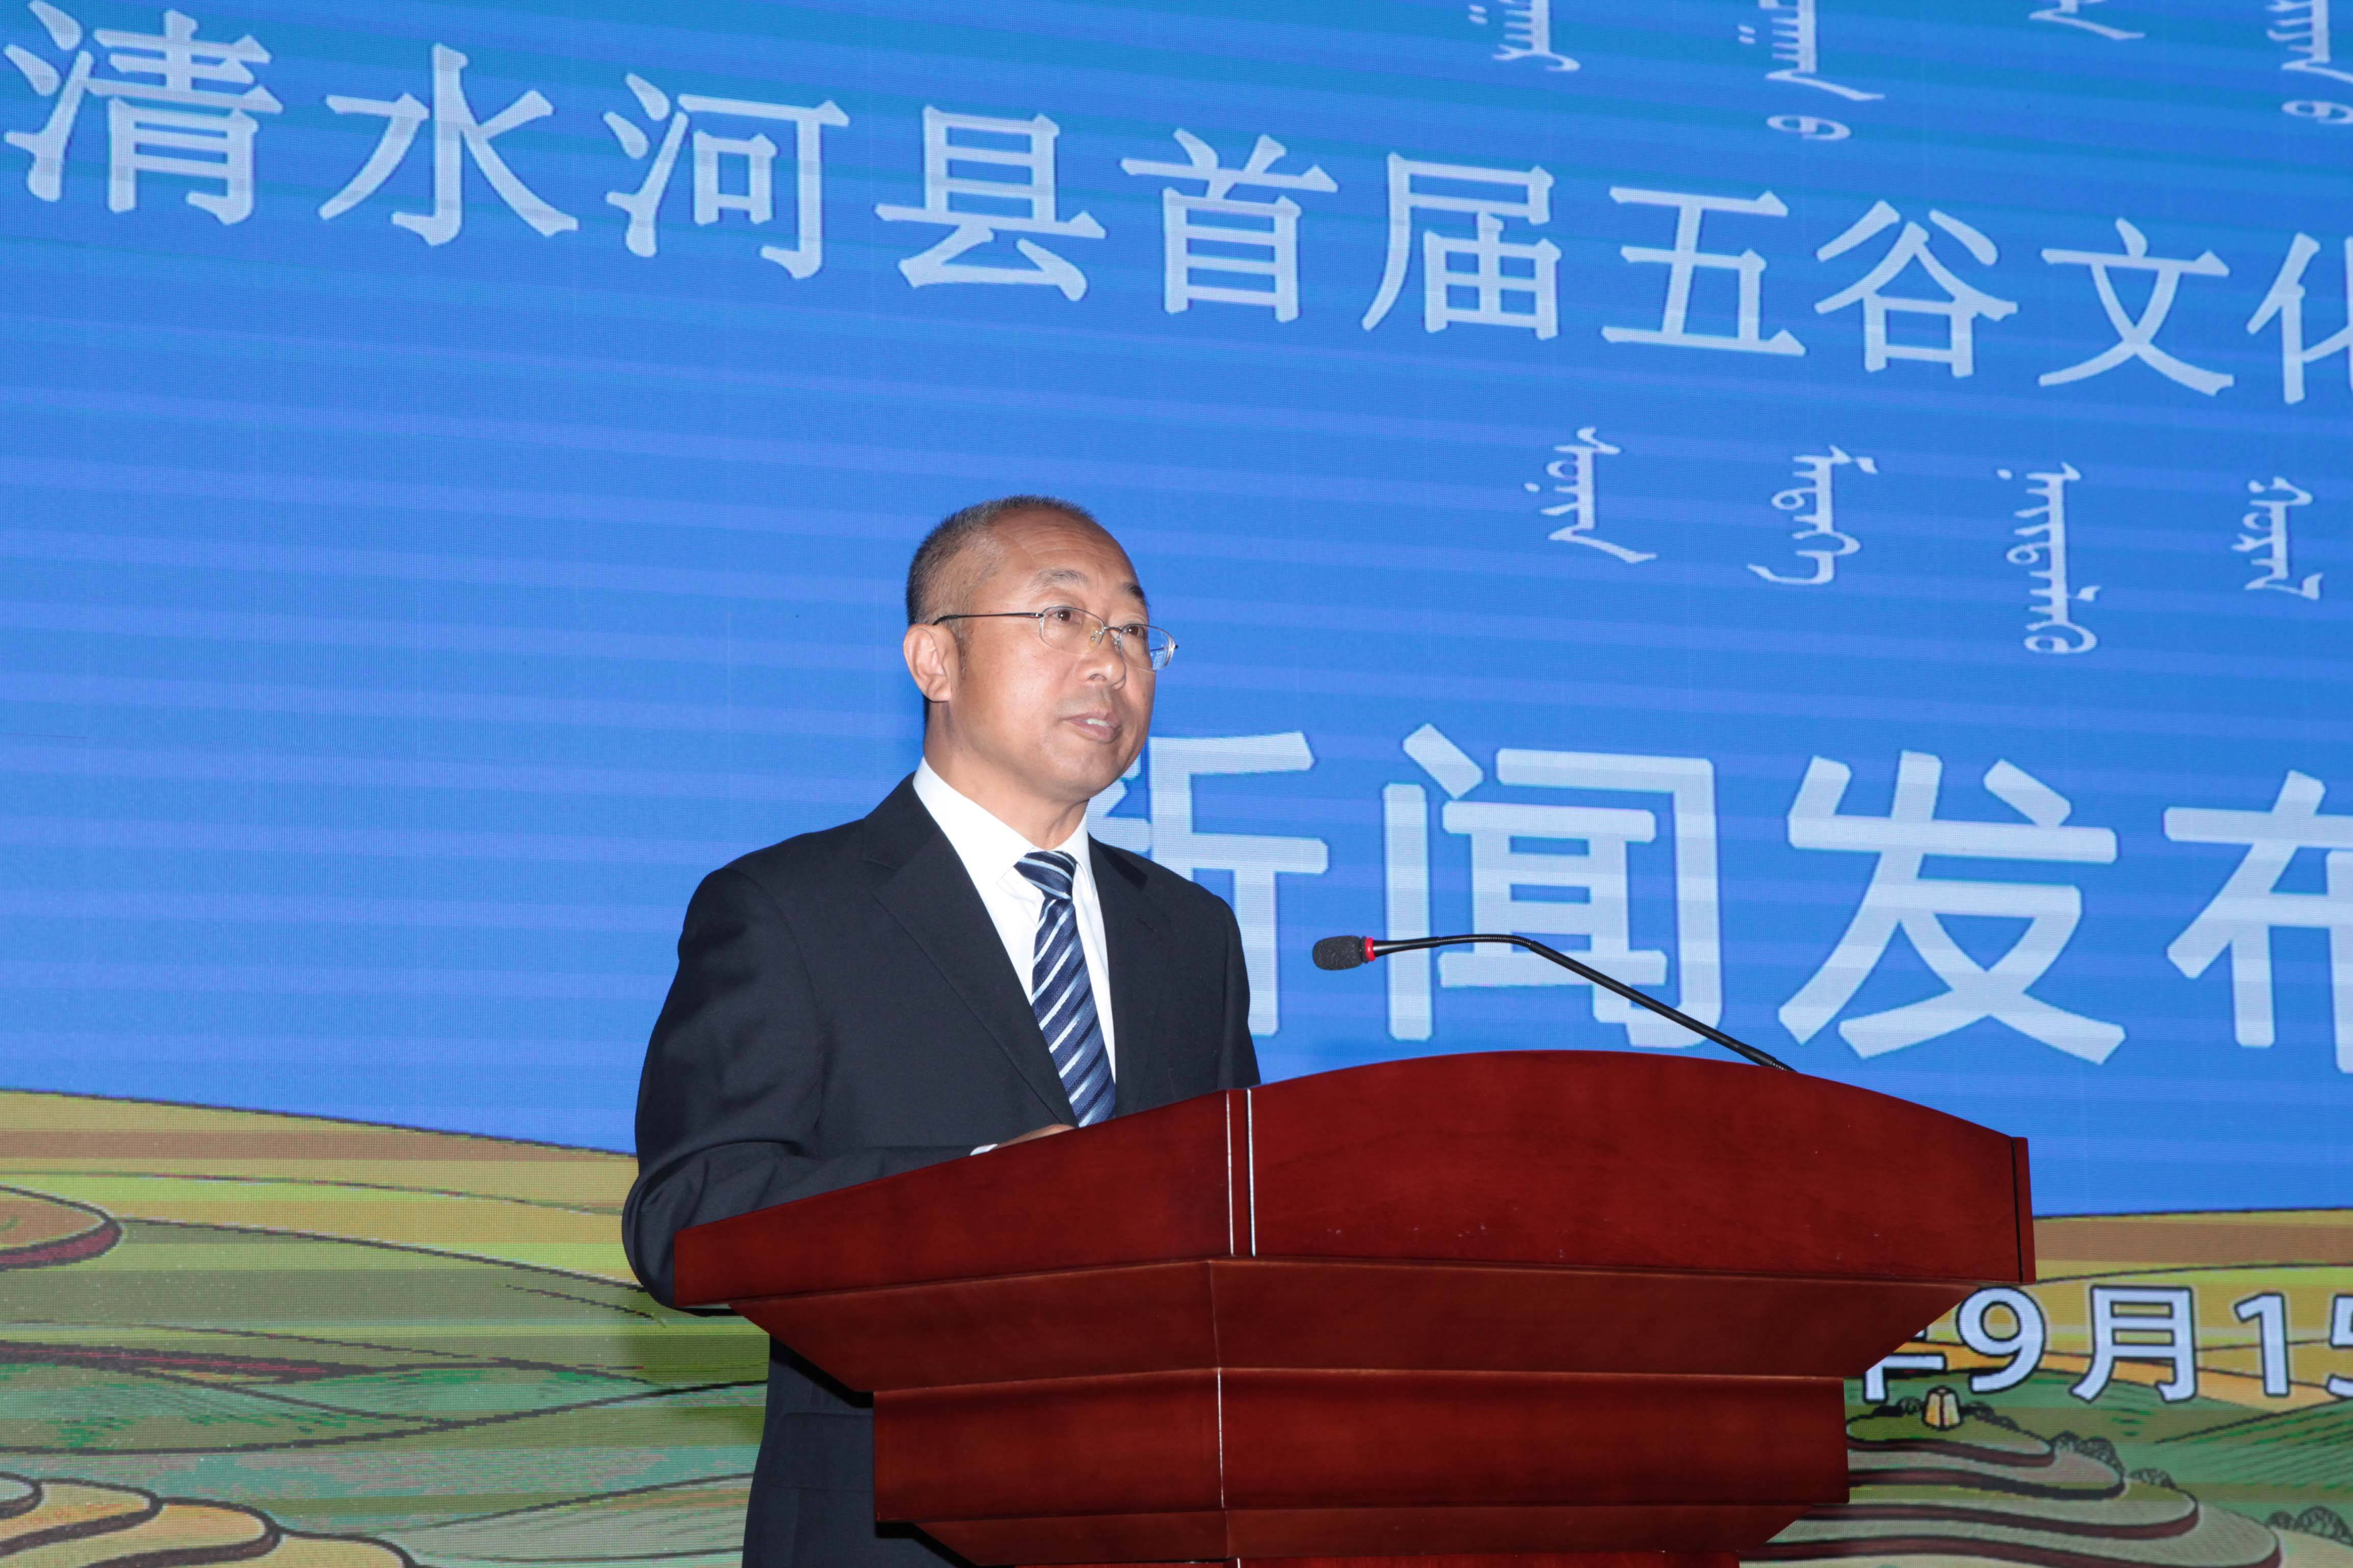 清水河县人民政府副县长,新闻发言人祁俊虎出席新闻发布会,并对清水河